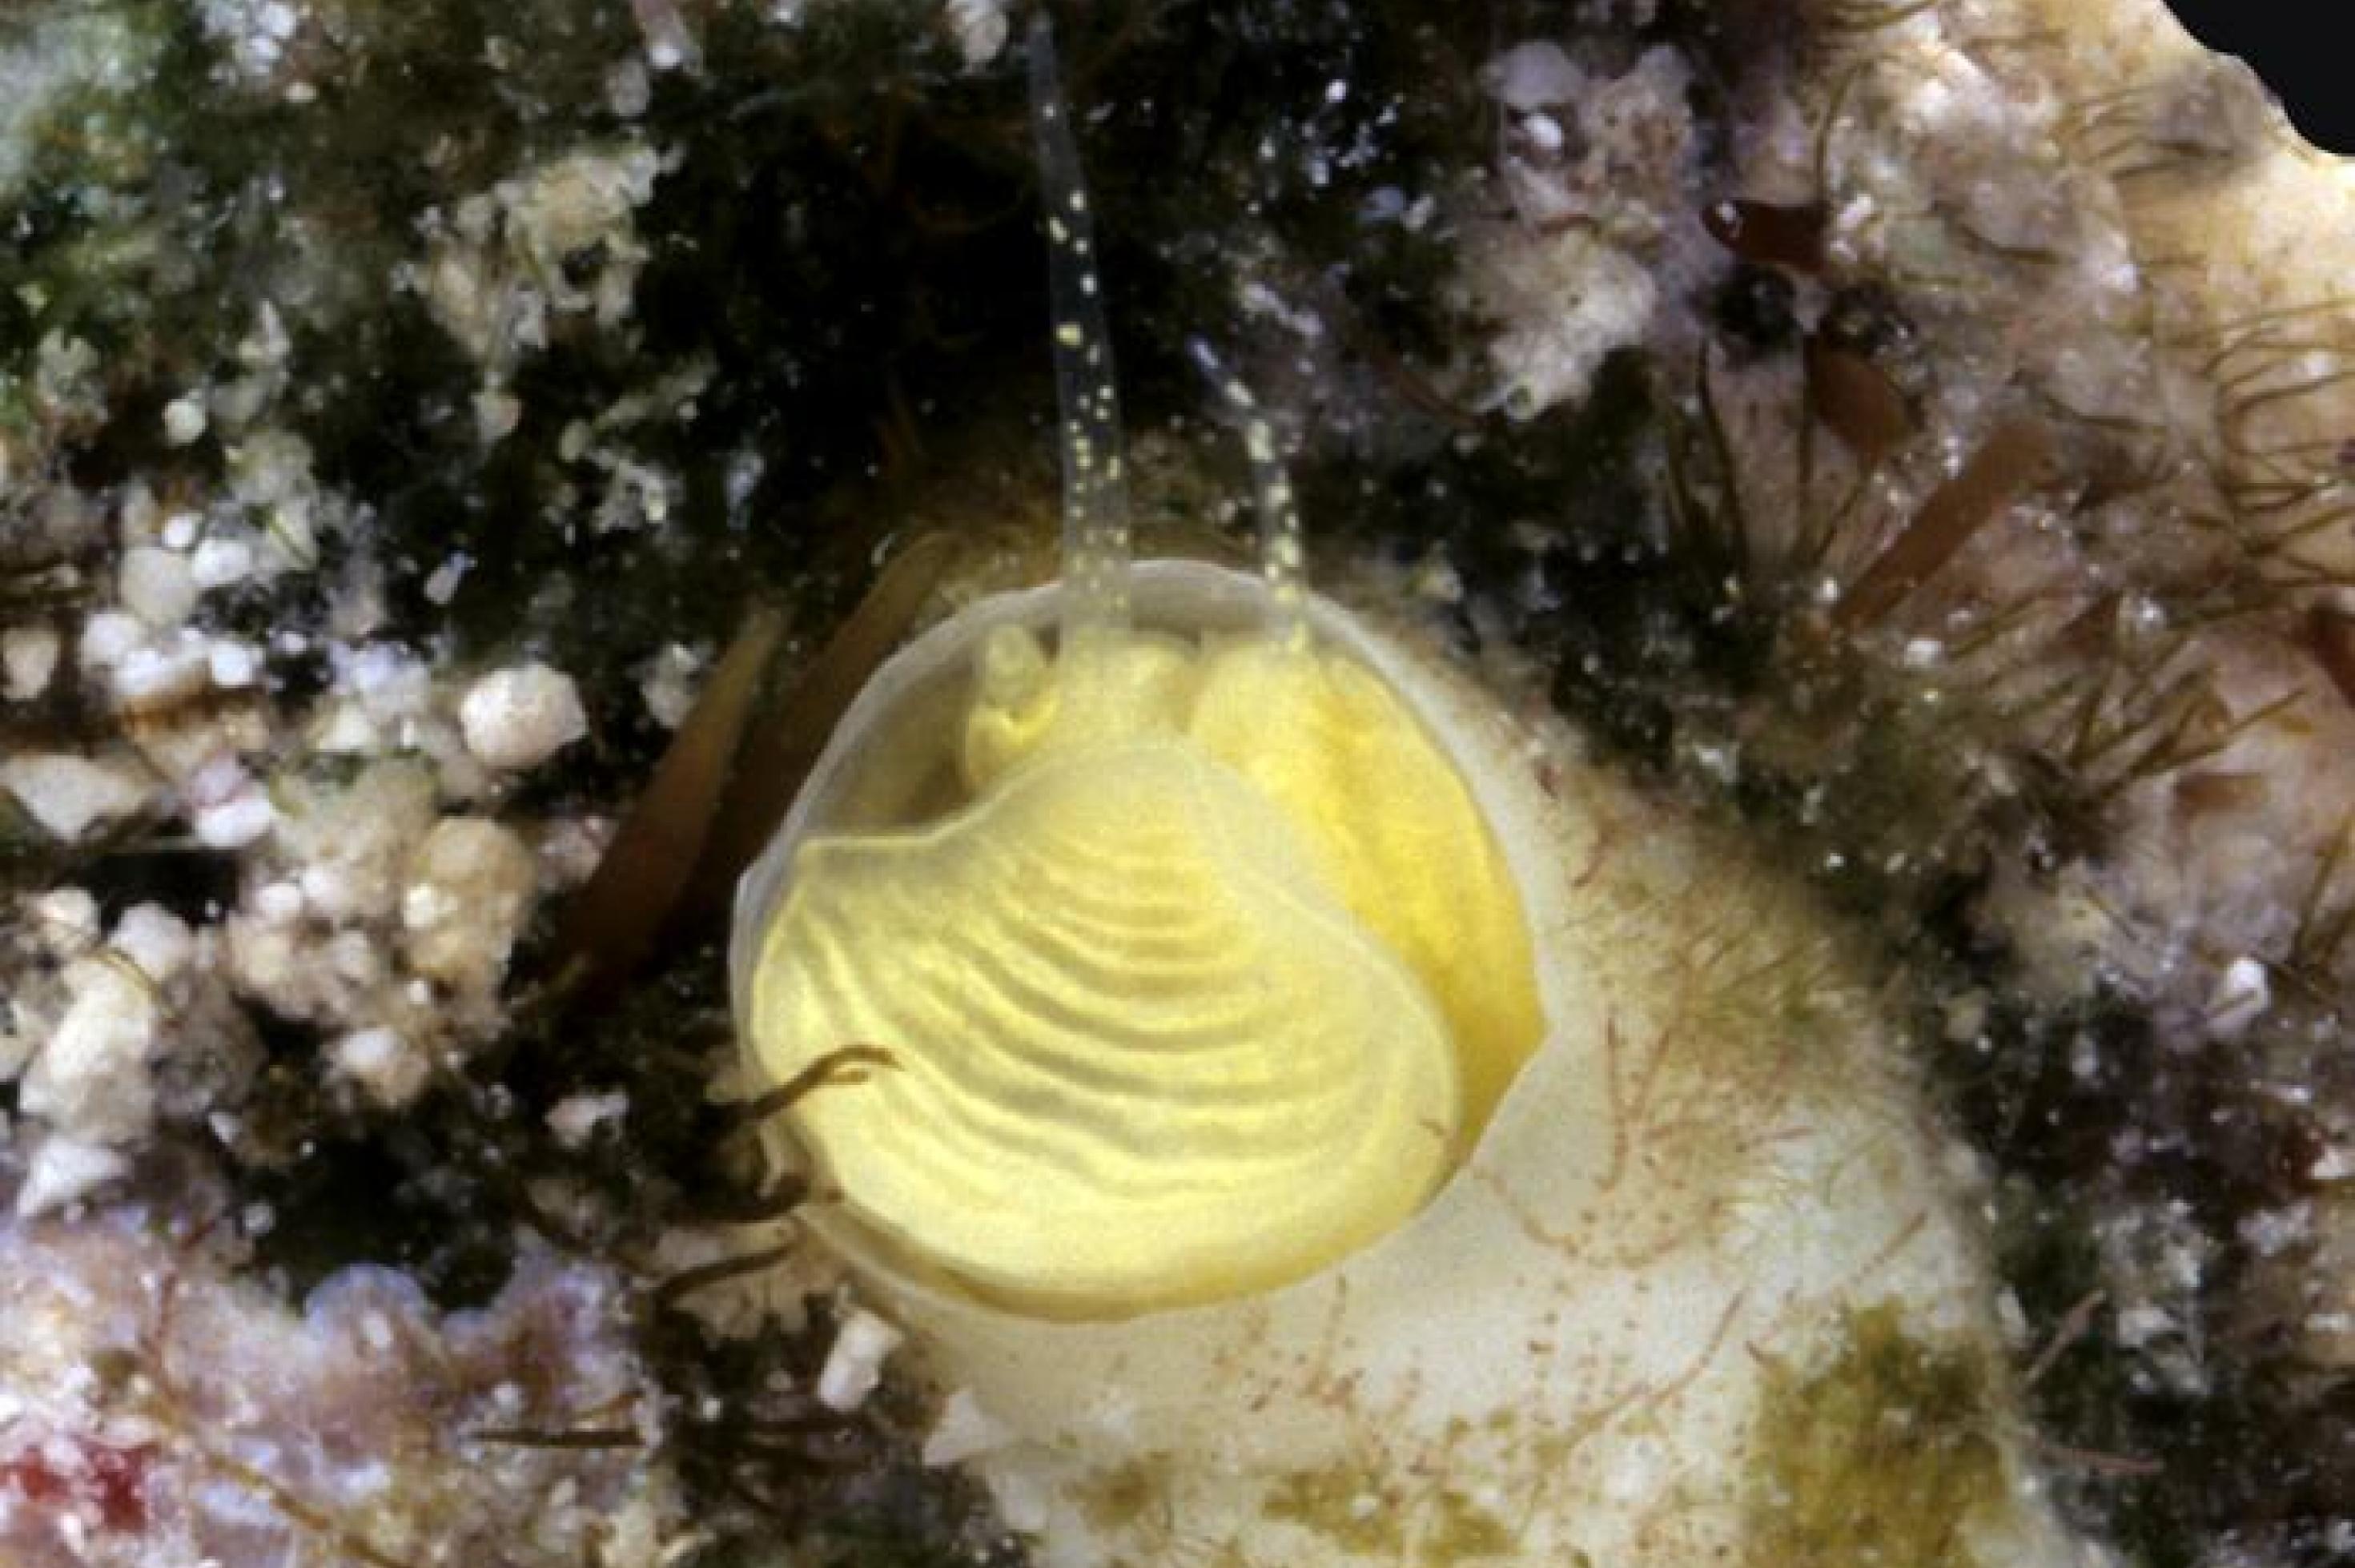 Unterwasserbild mit einer hellgelben Schnecke in einer beigen Röhre, von der nur der Kopf mit zwei Tentakel zu sehen ist.